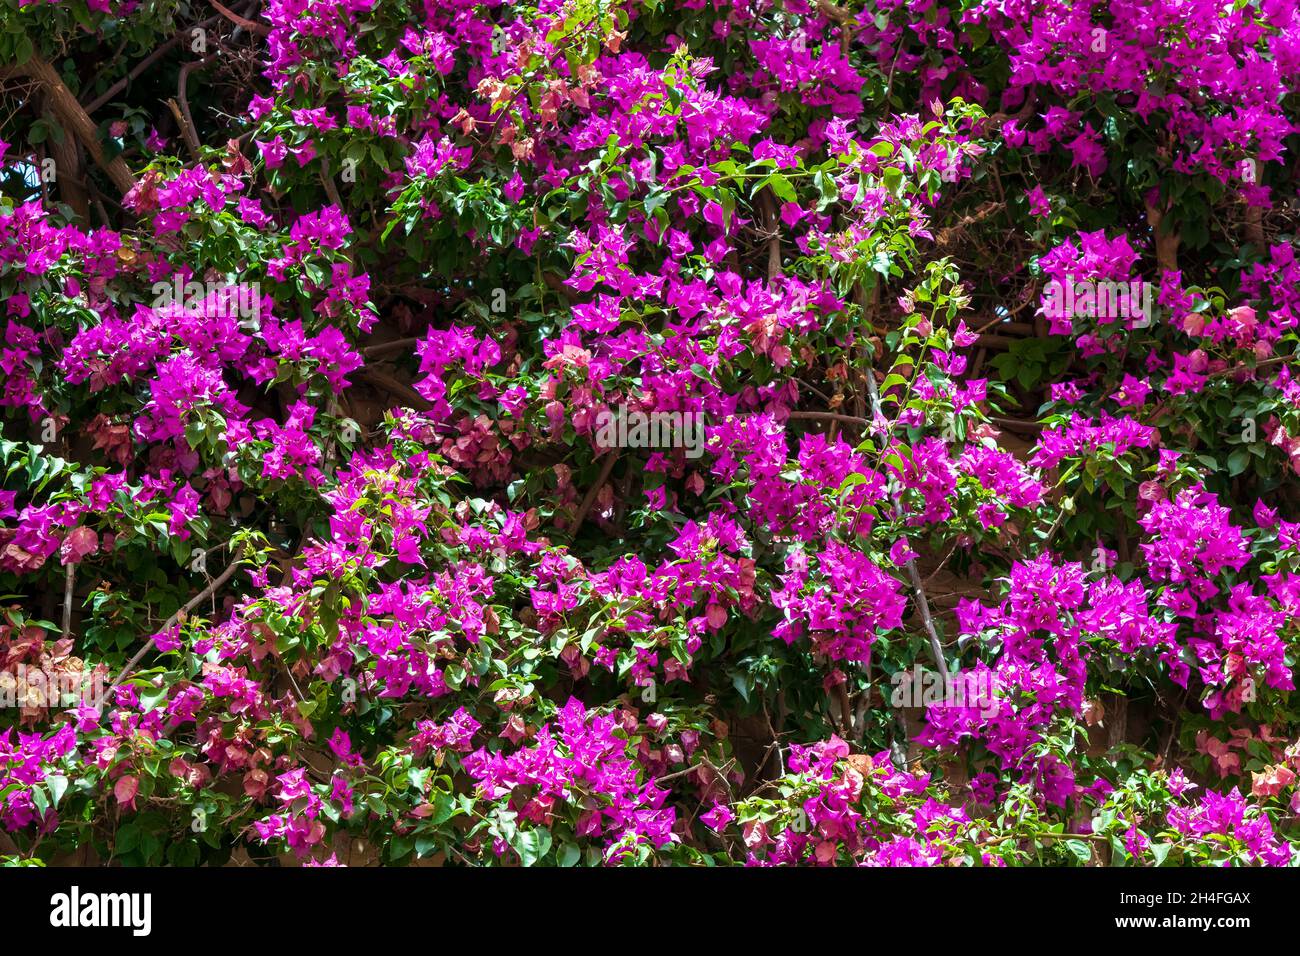 Sfondo fresco e luminoso con molti fiori viola Bougainvillea. Sfondo naturale con fiori Bougainvillea. Immagine fiorita luminosa. Foto Stock